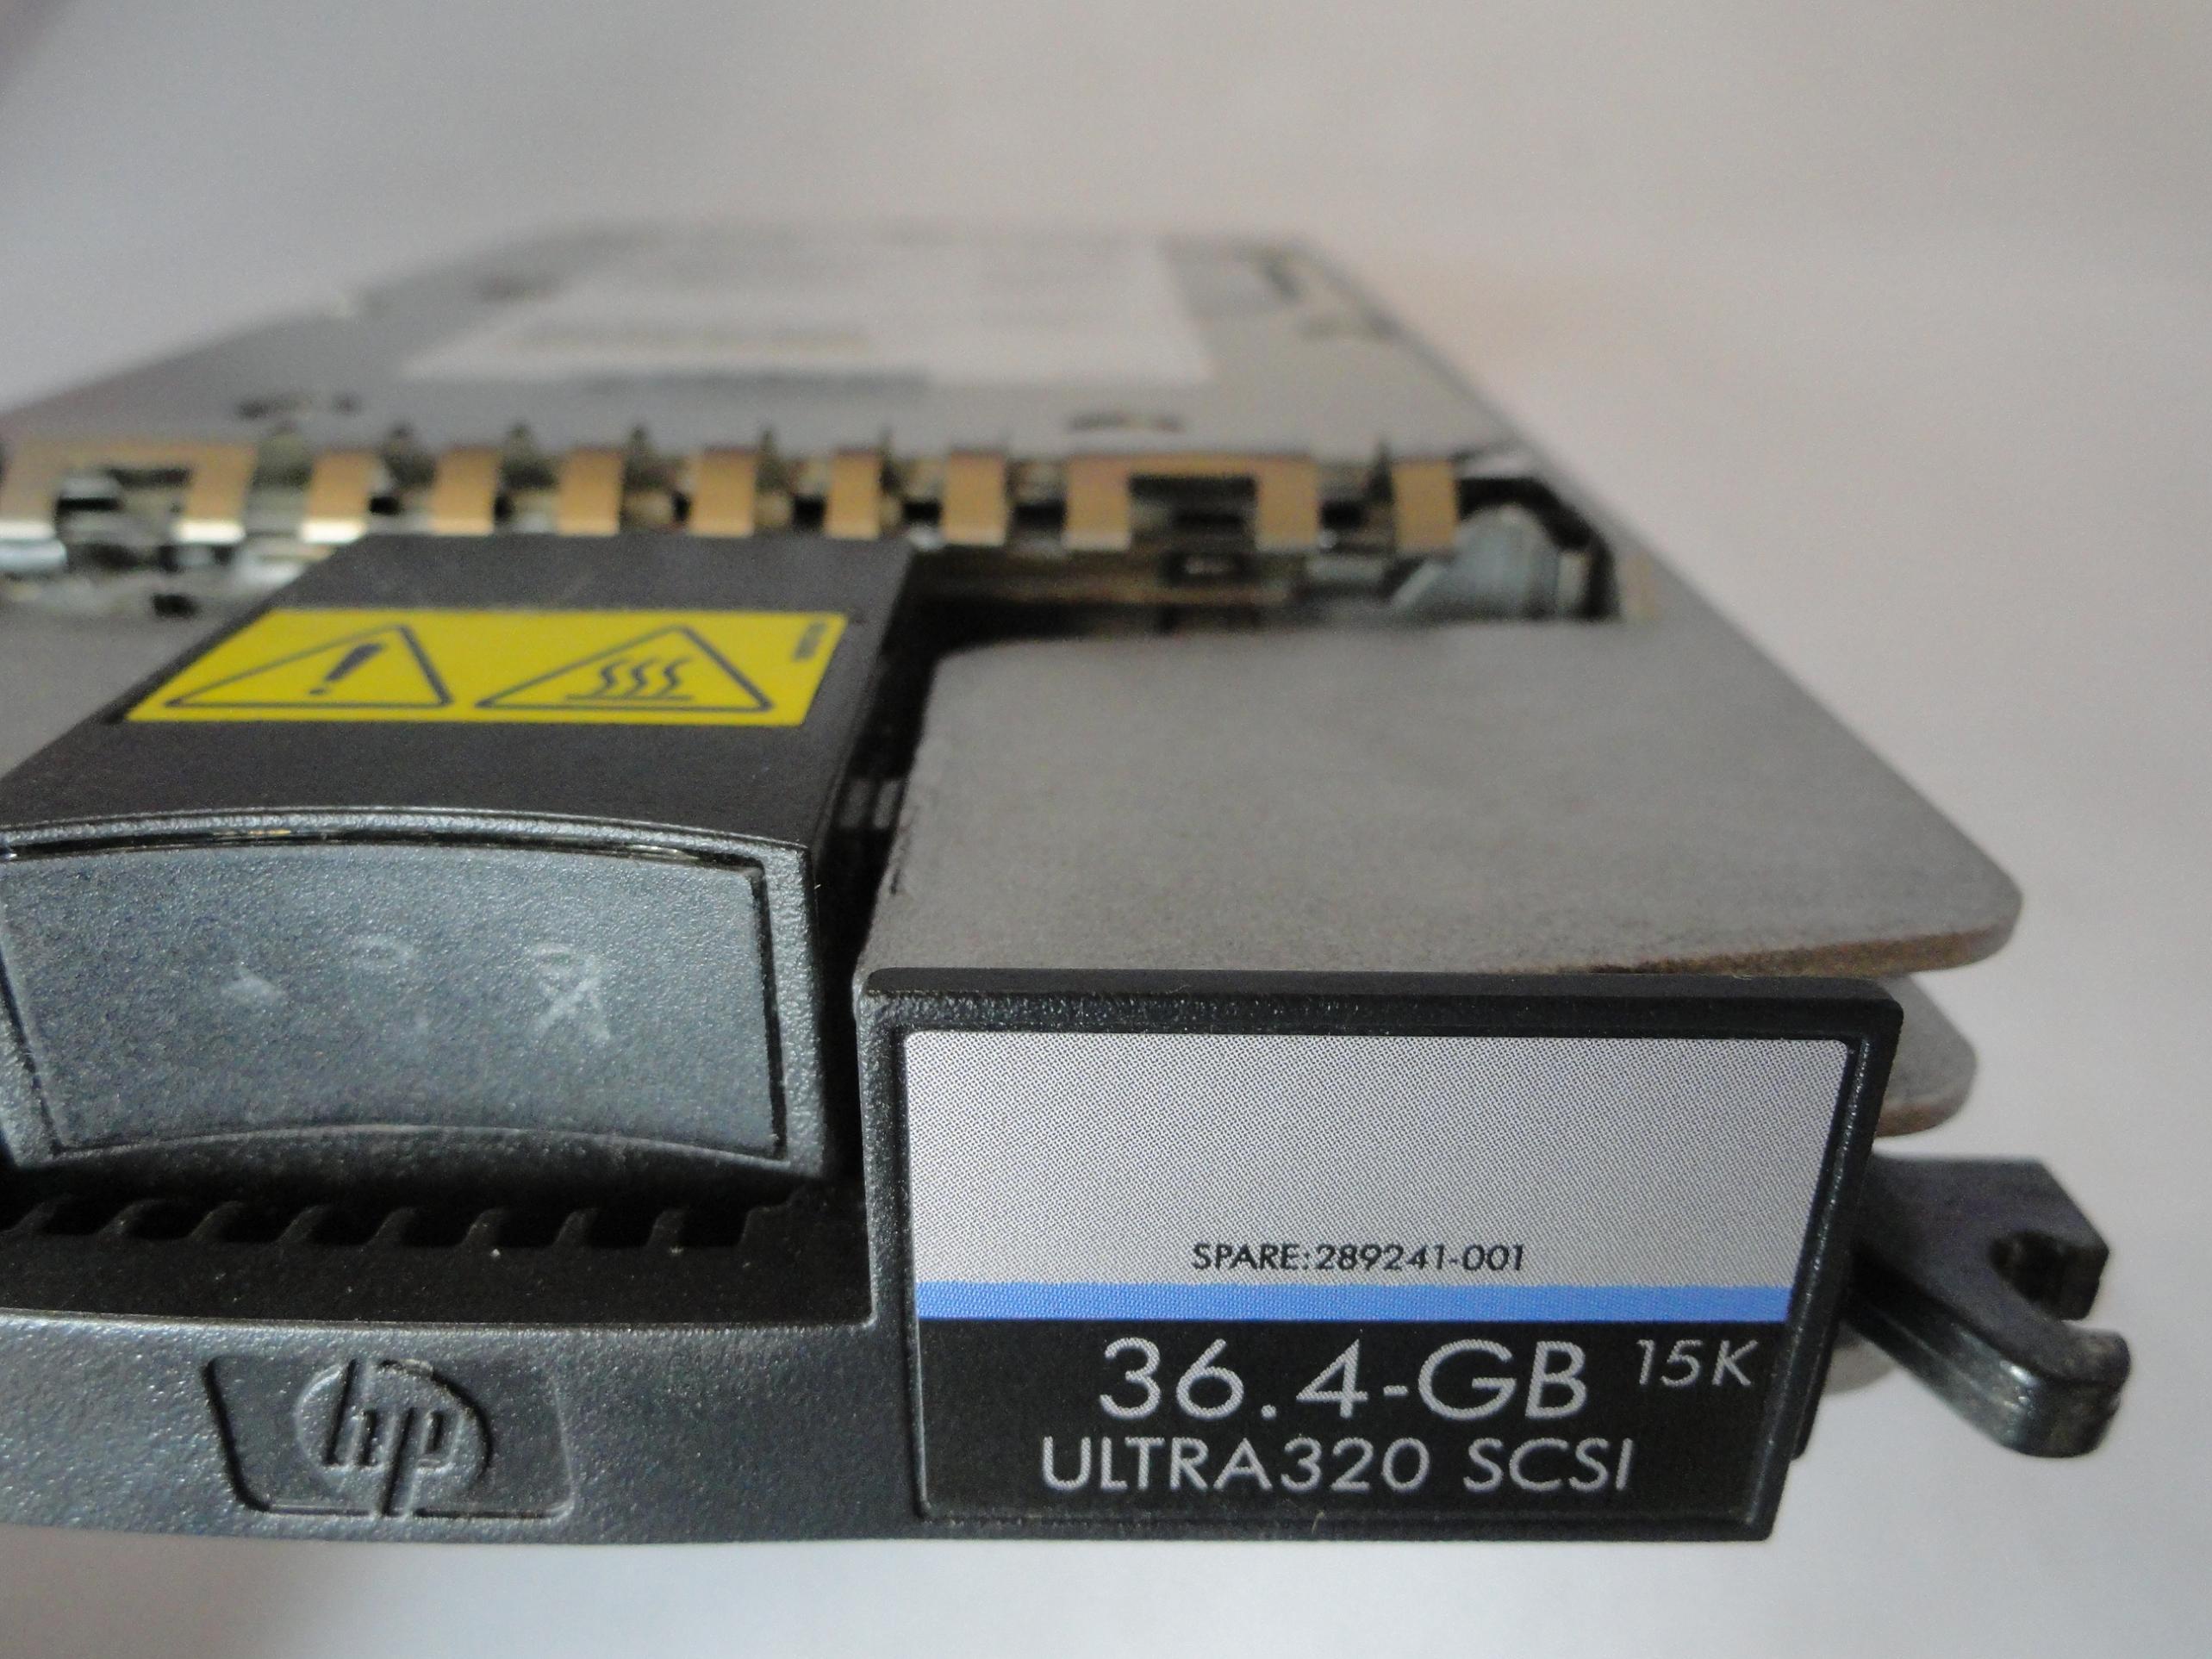 9x6006-130 - Seagate HP 36.4Gb SCSI 80 Pin 15Krpm 3.5in HDD - Refurbished